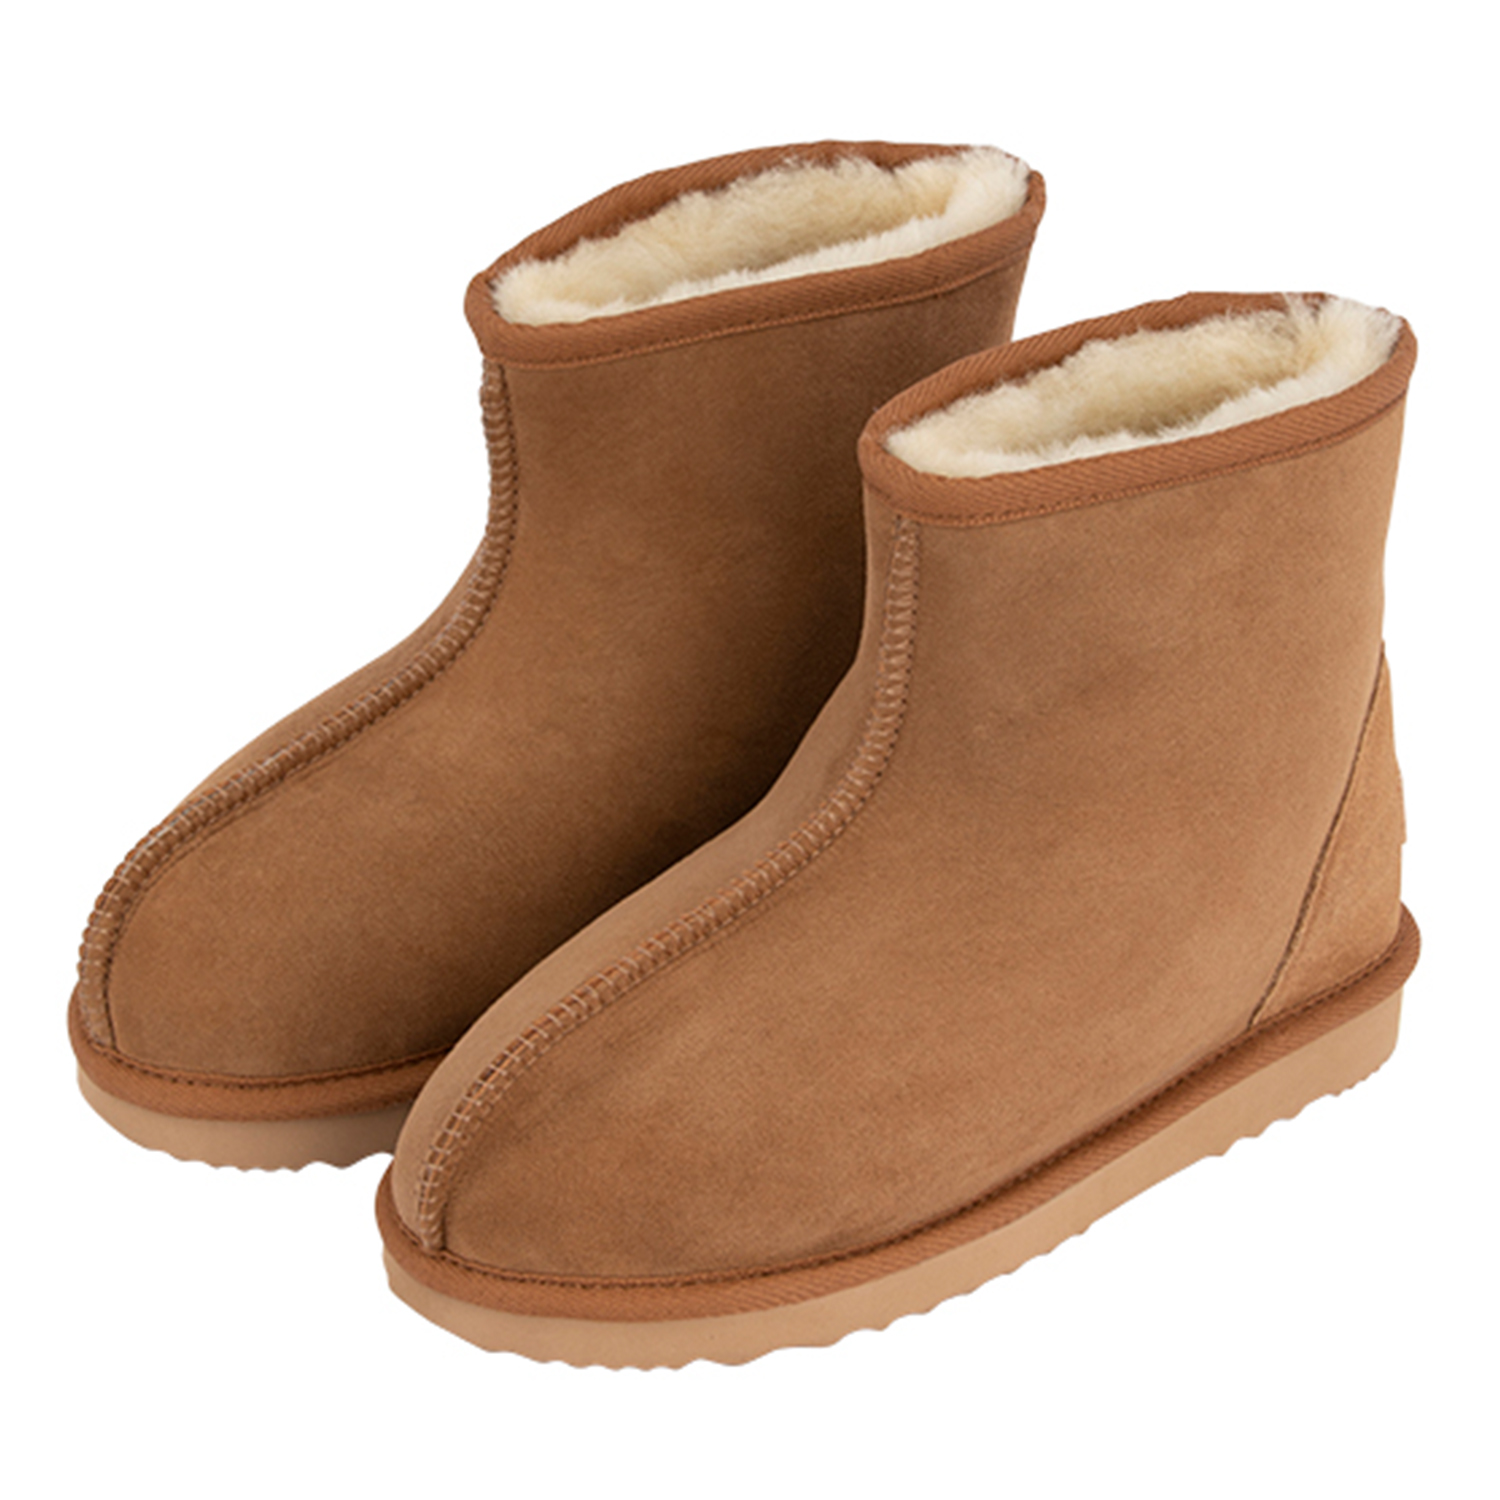 Australian Leather Ankle Sheepskin Boots